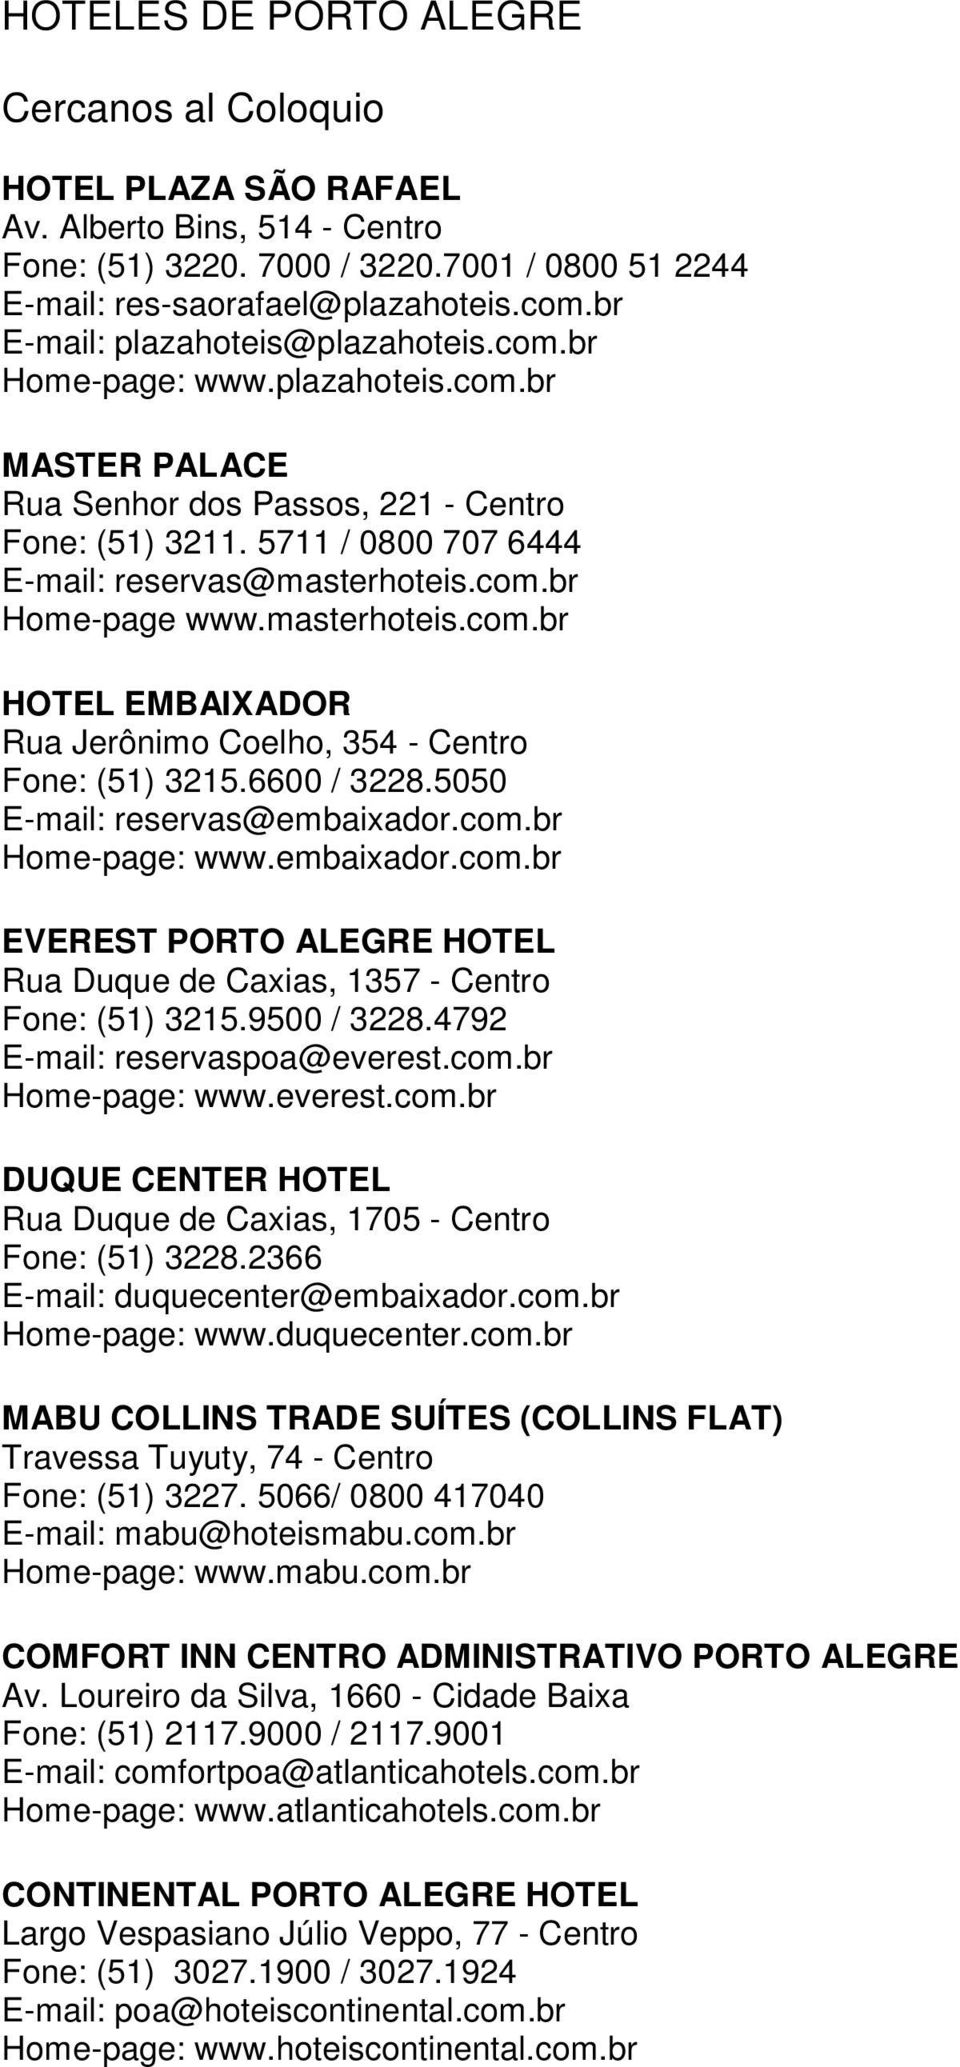 6600 / 3228.5050 E-mail: reservas@embaixador.com.br Home-page: www.embaixador.com.br EVEREST PORTO ALEGRE HOTEL Rua Duque de Caxias, 1357 - Centro Fone: (51) 3215.9500 / 3228.